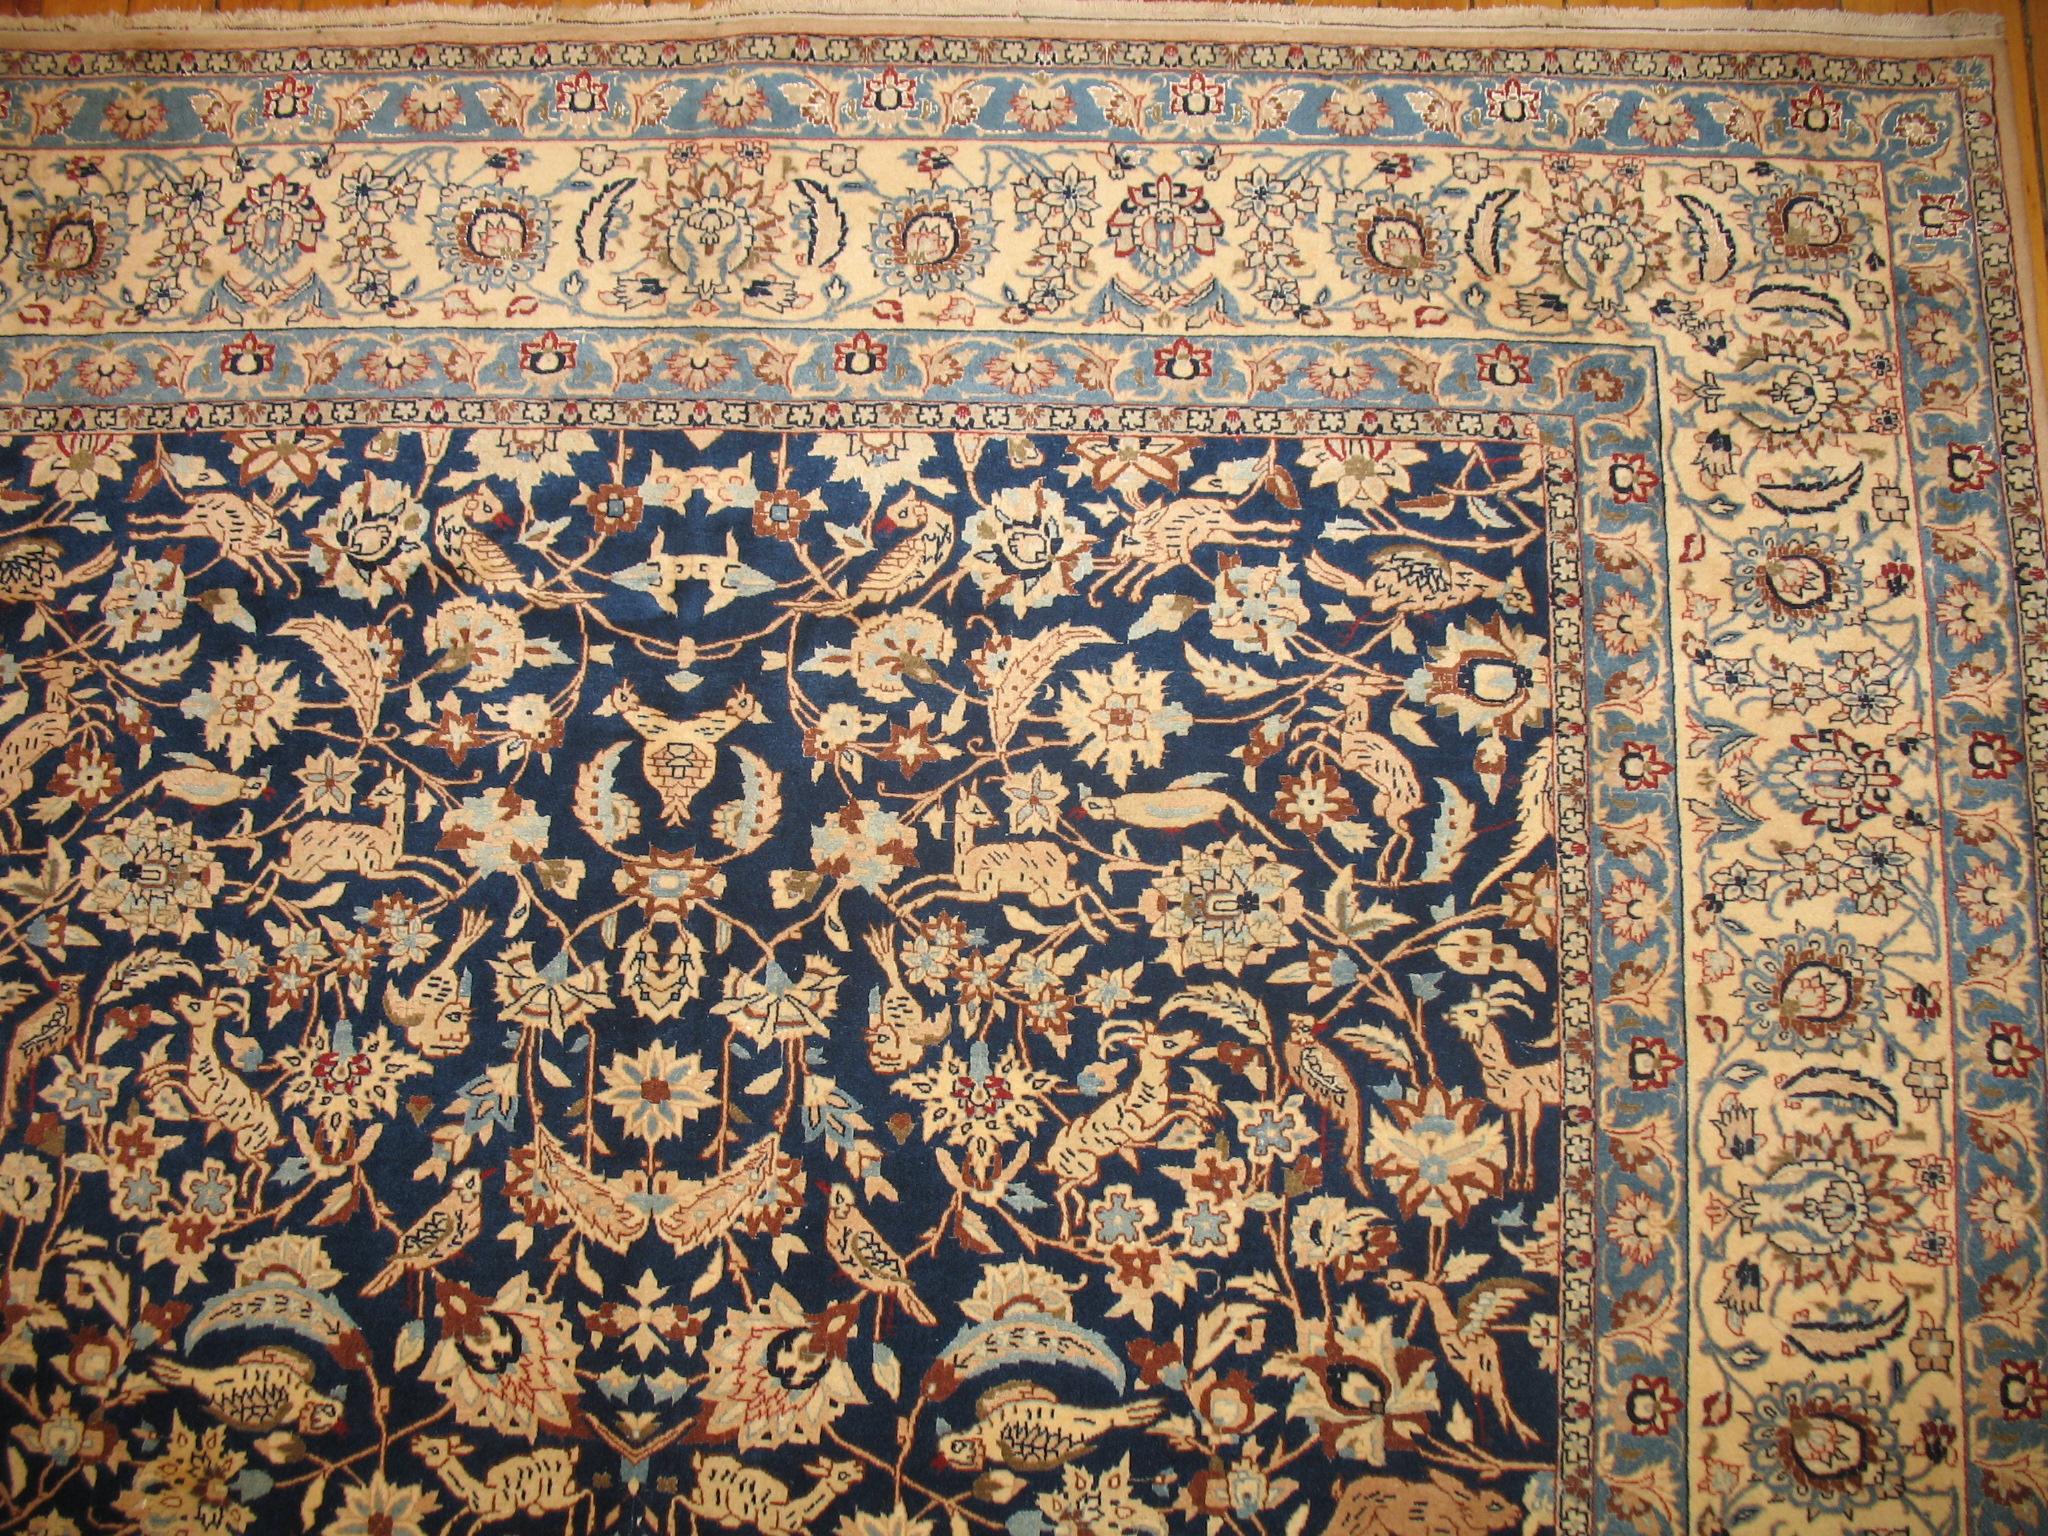 Sehr fein gewebter, malerischer persischer Nain-Teppich mit einem malerischen Muster auf einem knackig blauen Feld.

Nain ist ein kleines Dorf im Zentraliran, das sich in jüngster Zeit zu einem bekannten Zentrum der Teppichweberei entwickelt hat.